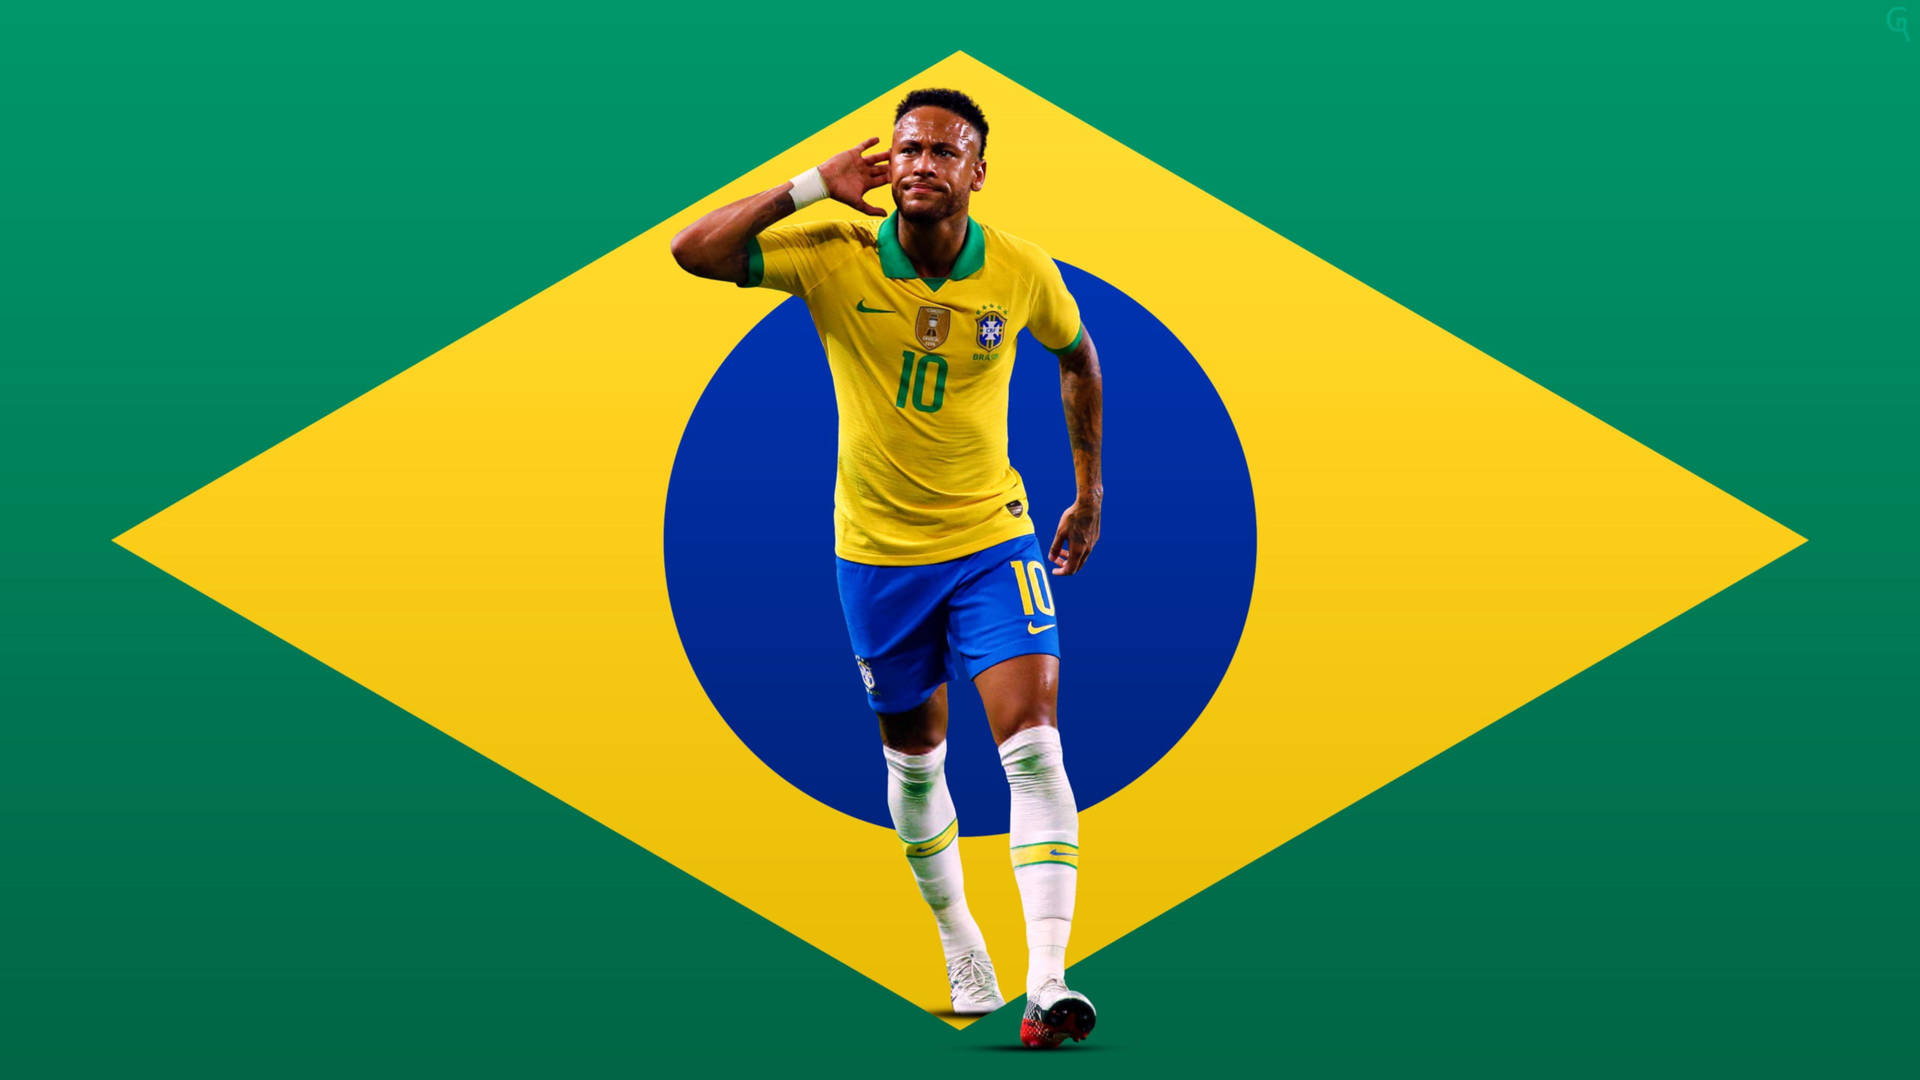 Neymaren 4k Sobre La Bandera Simplificada De Brasil. Fondo de pantalla